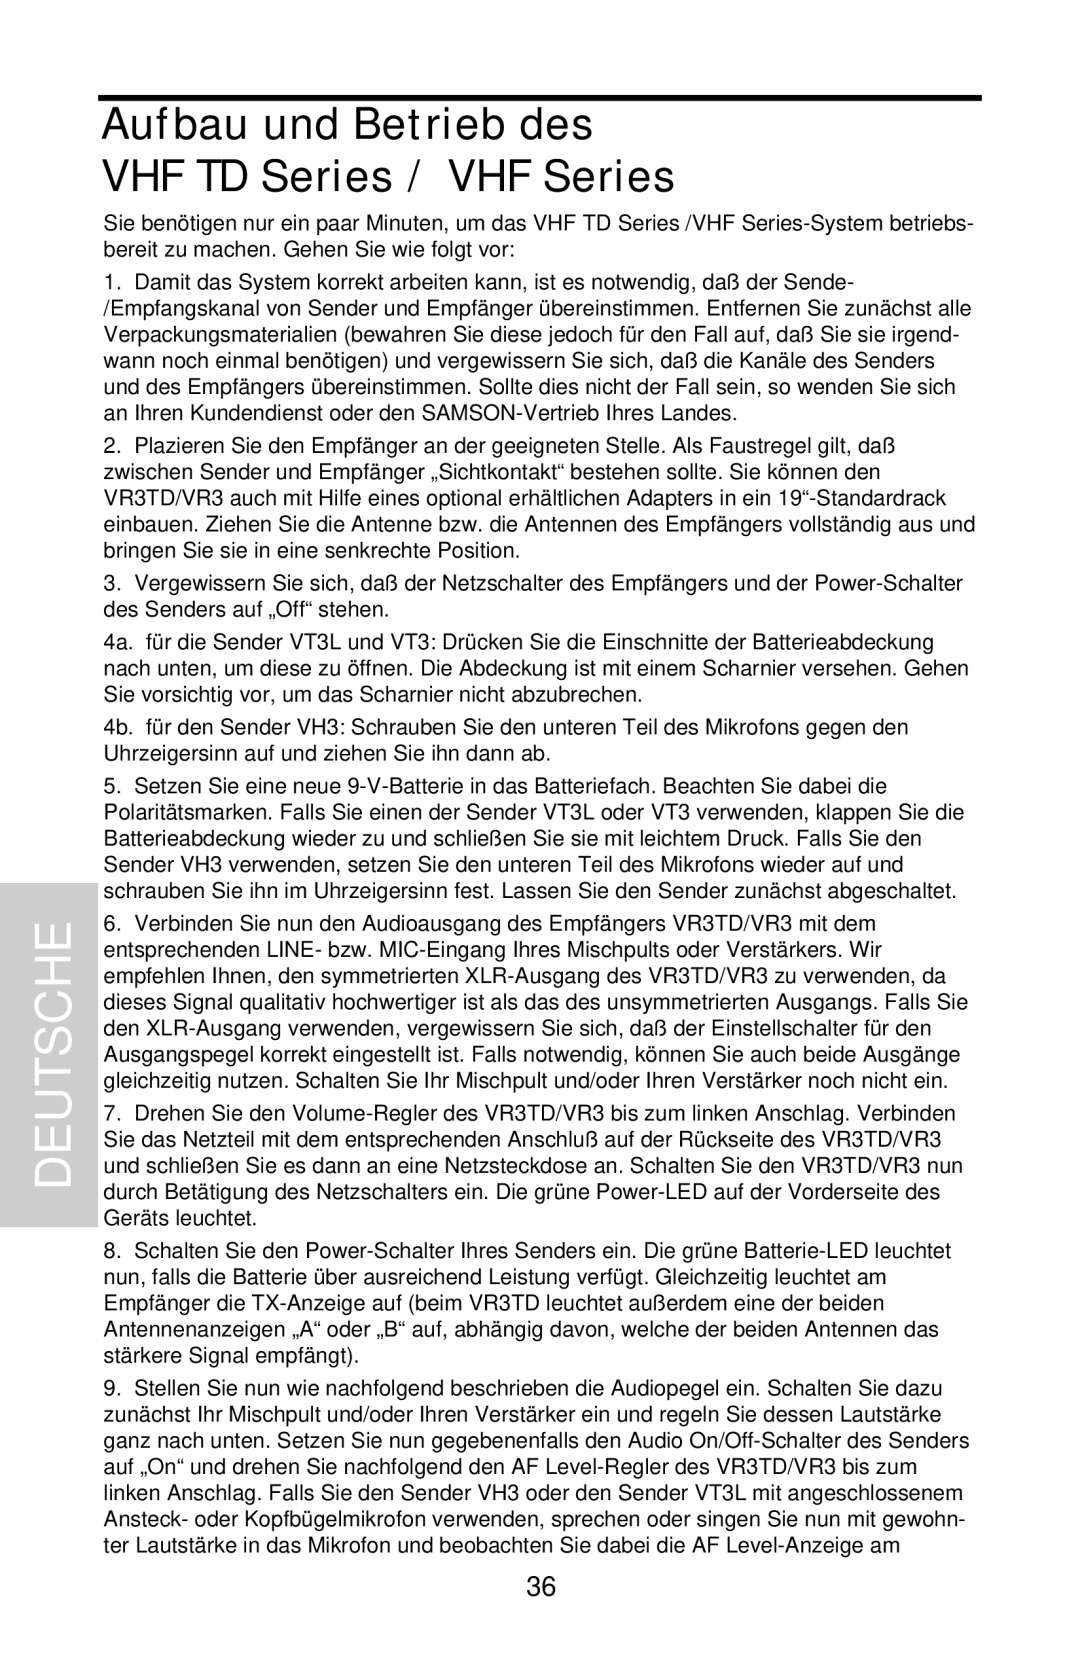 Samson owner manual Aufbau und Betrieb des VHF TD Series / VHF Series, Deutsche 